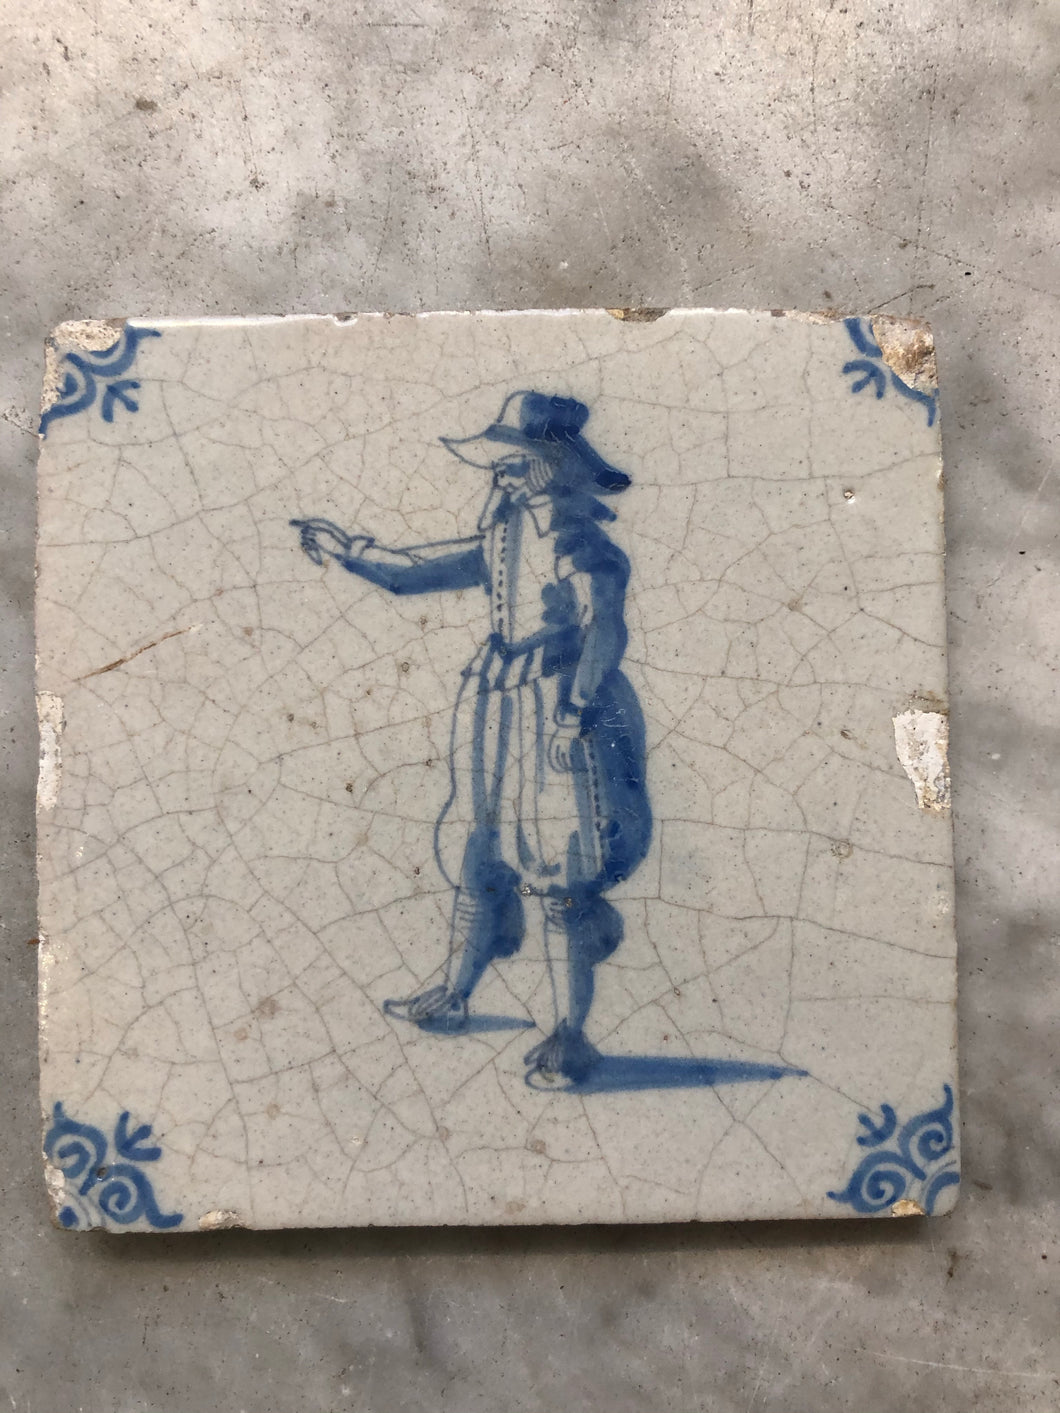 Delft handpainted dutch tile with gentleman